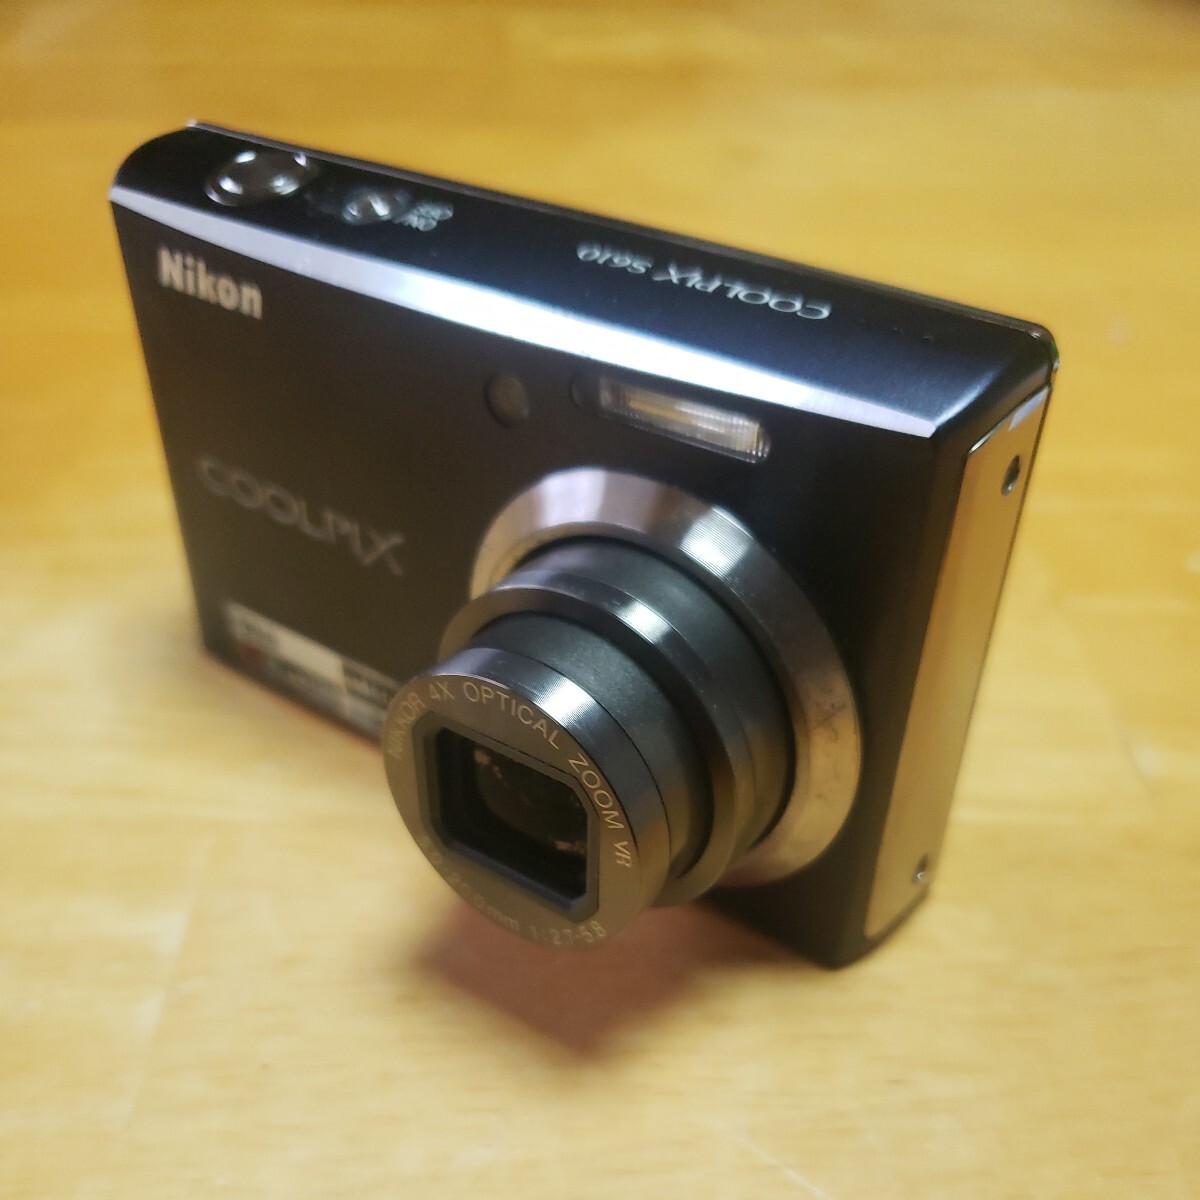 ニコンCOOLPIX.S640コンパクトデジタルカメラの画像3